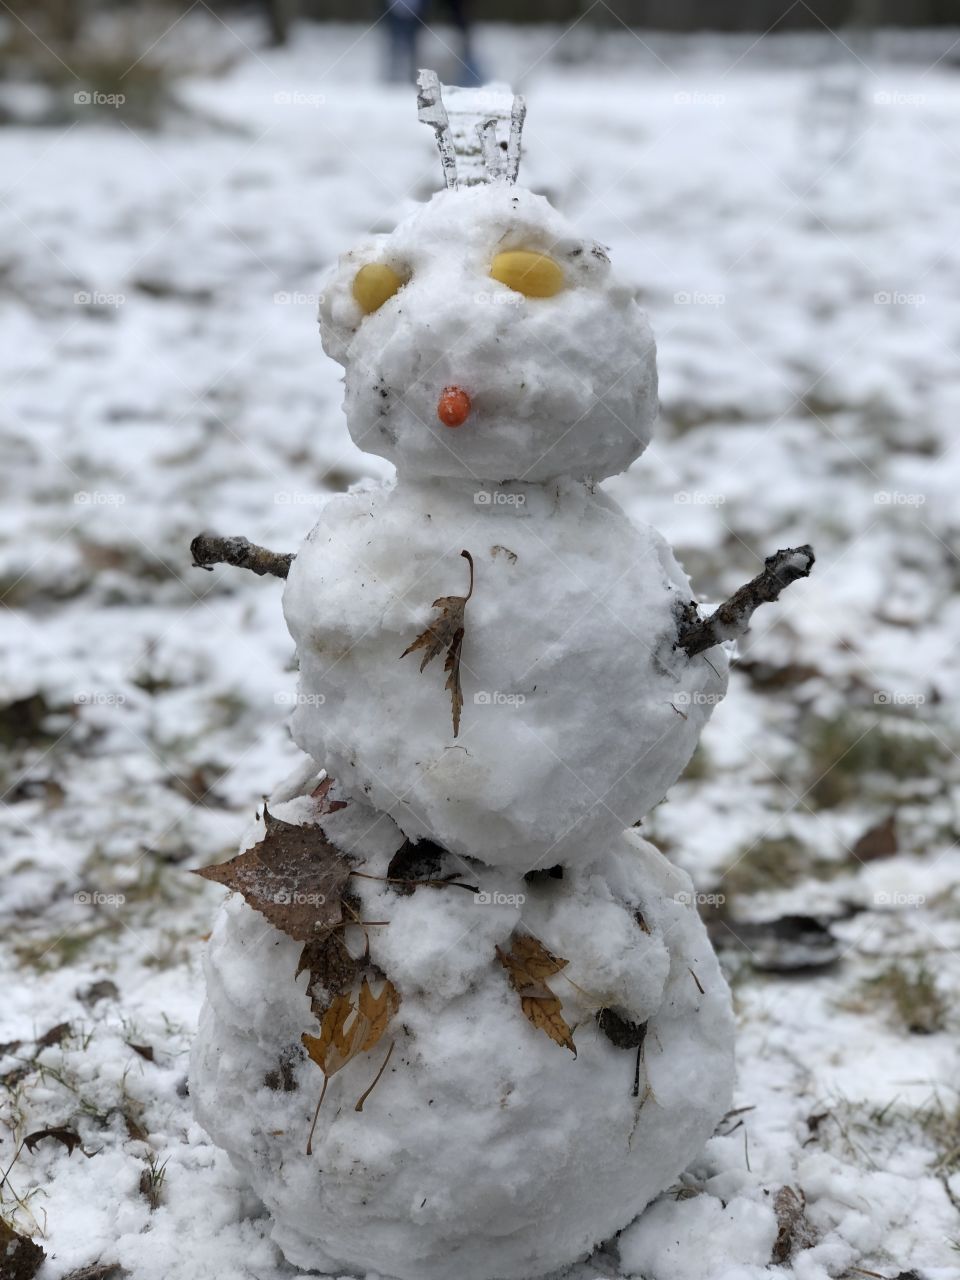 A little snowman